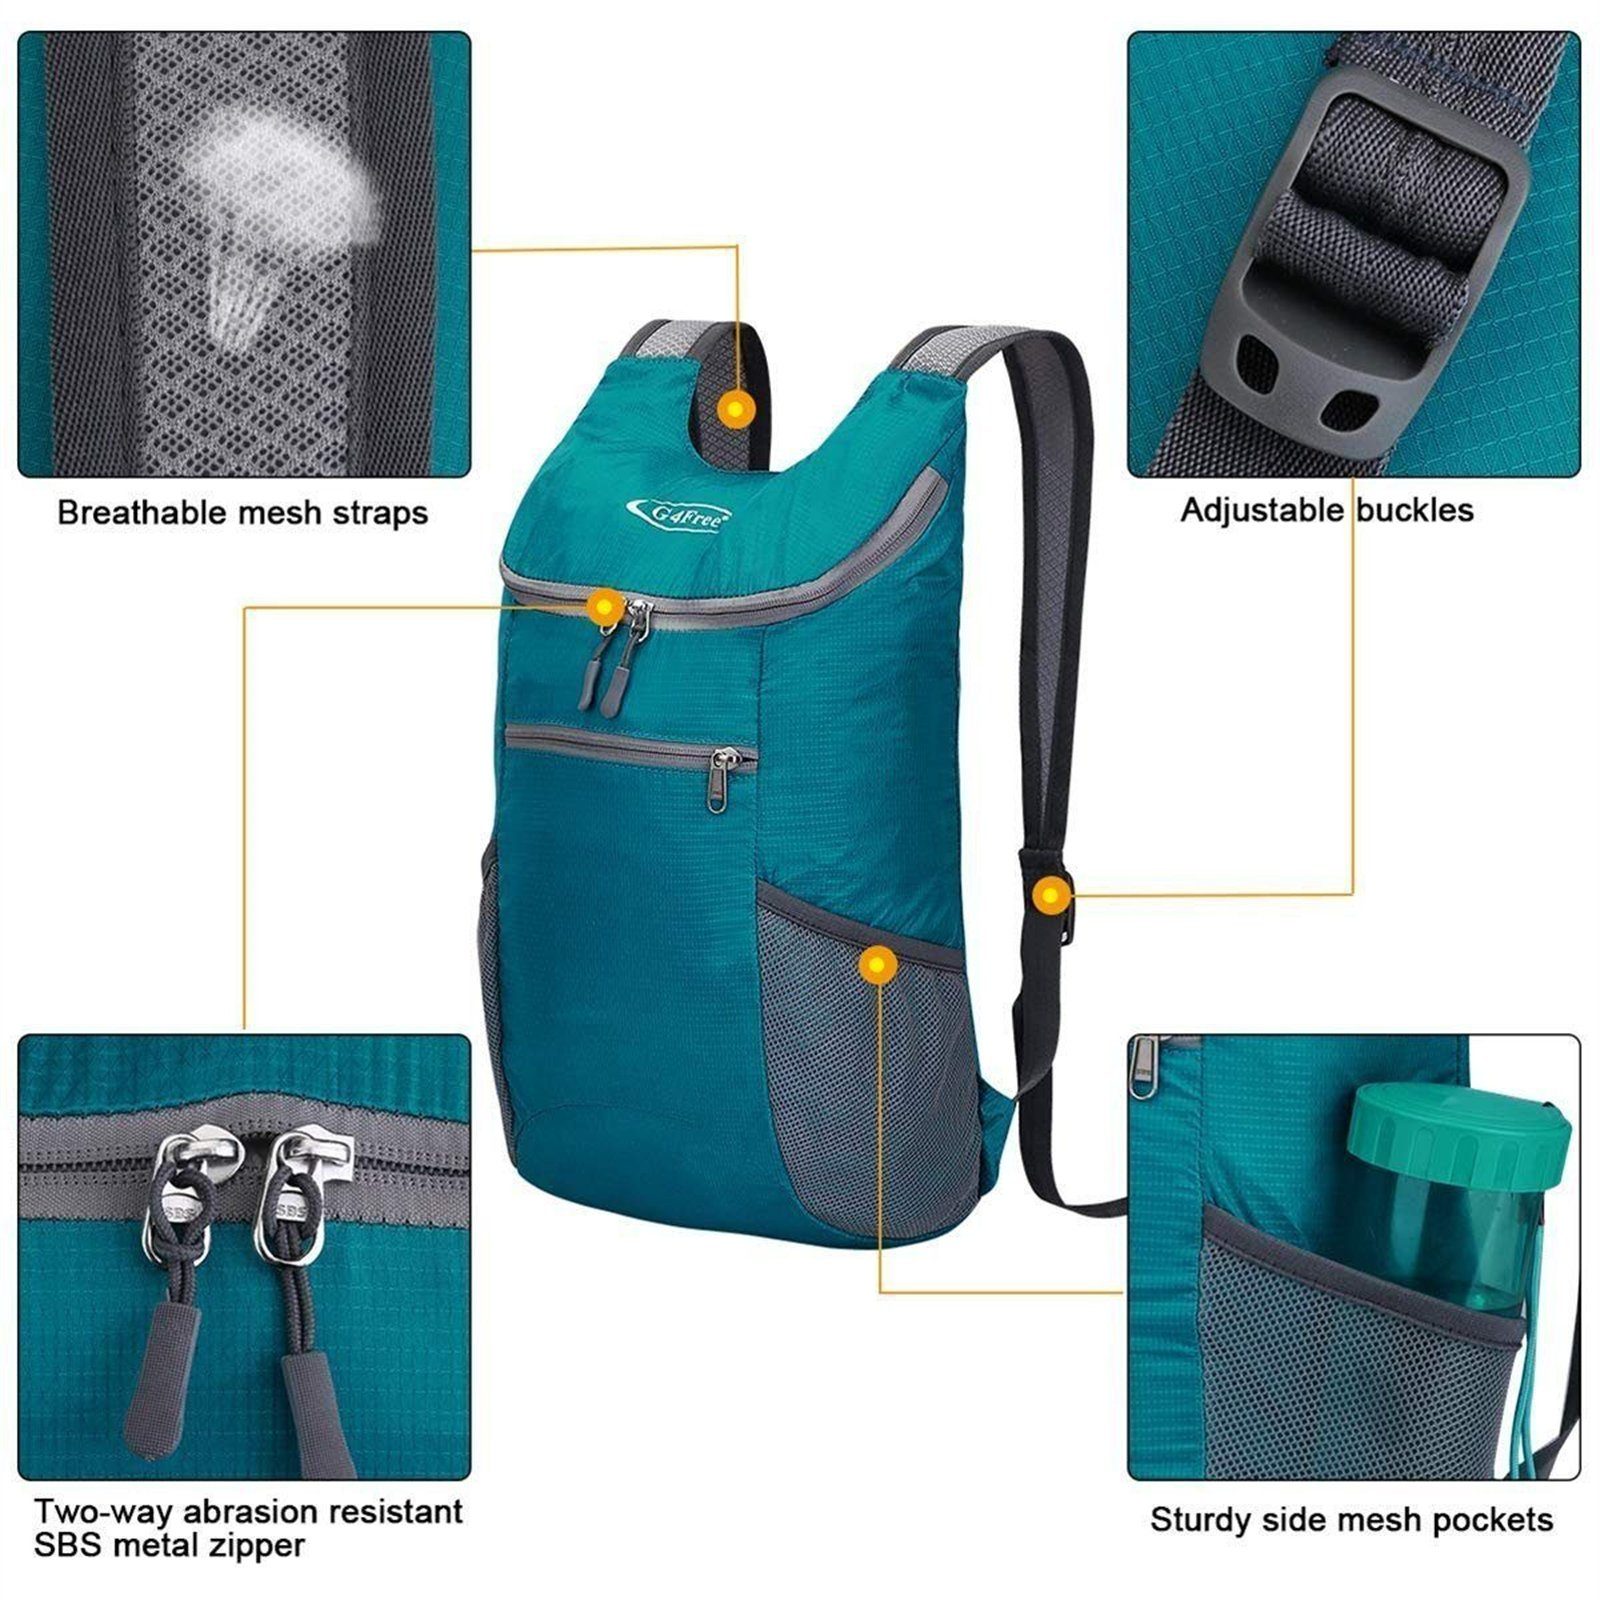 Backpack G4Free Pfauenblau Rucksack 11 Wanderrucksack, L, Kleiner Wanderrucksack